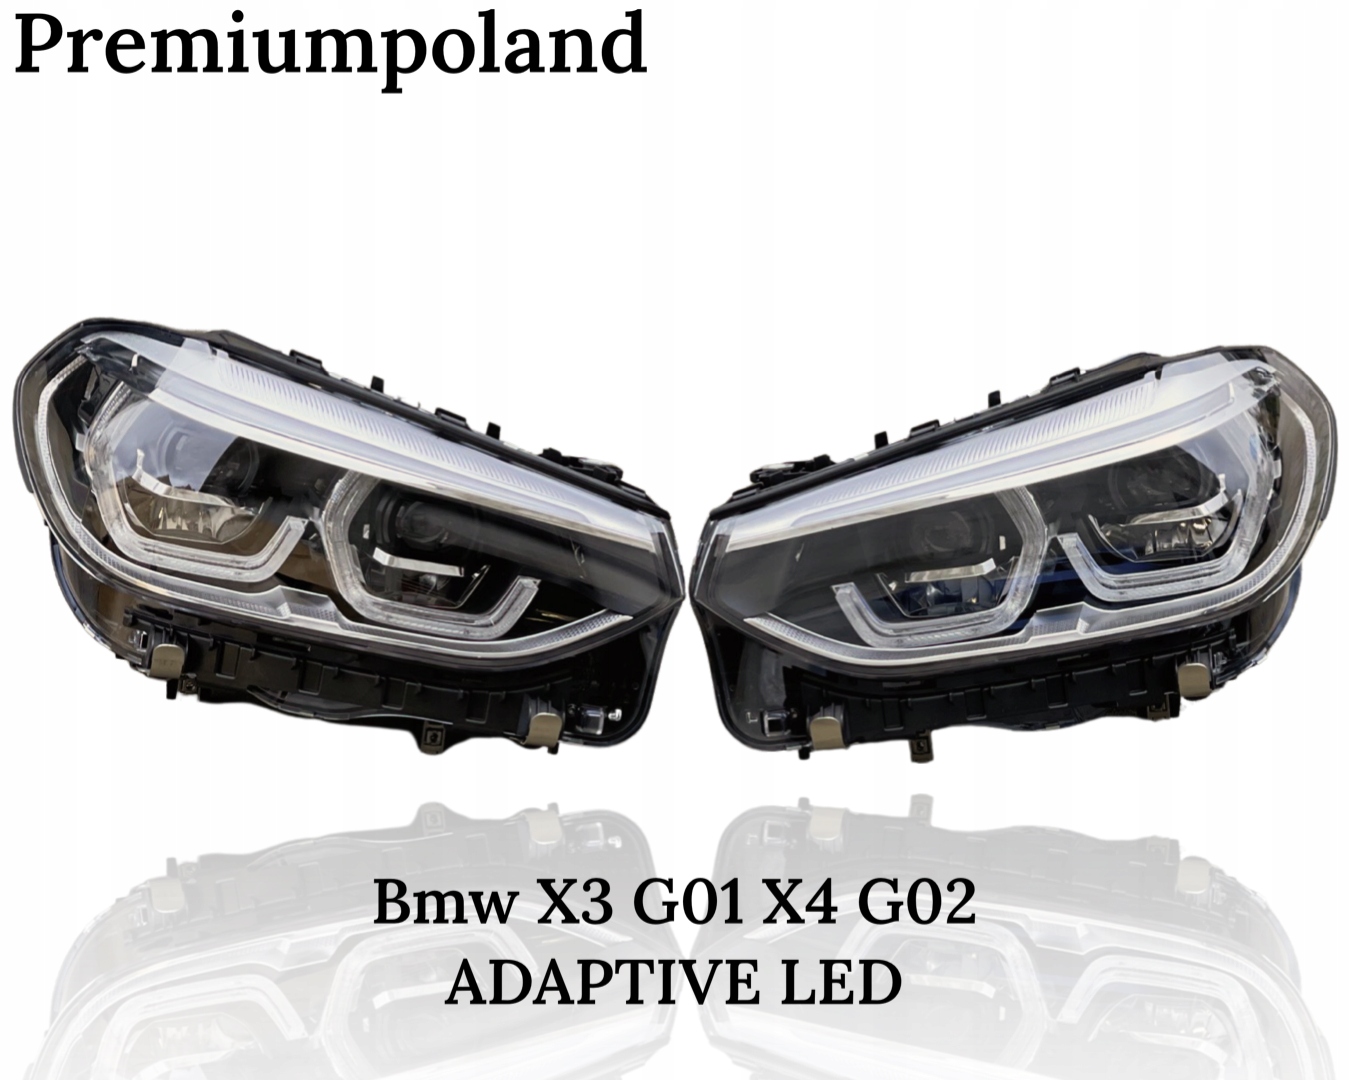 фары BMW X3 G01 X4 G02 ADAPTIVE LED ORYG EU